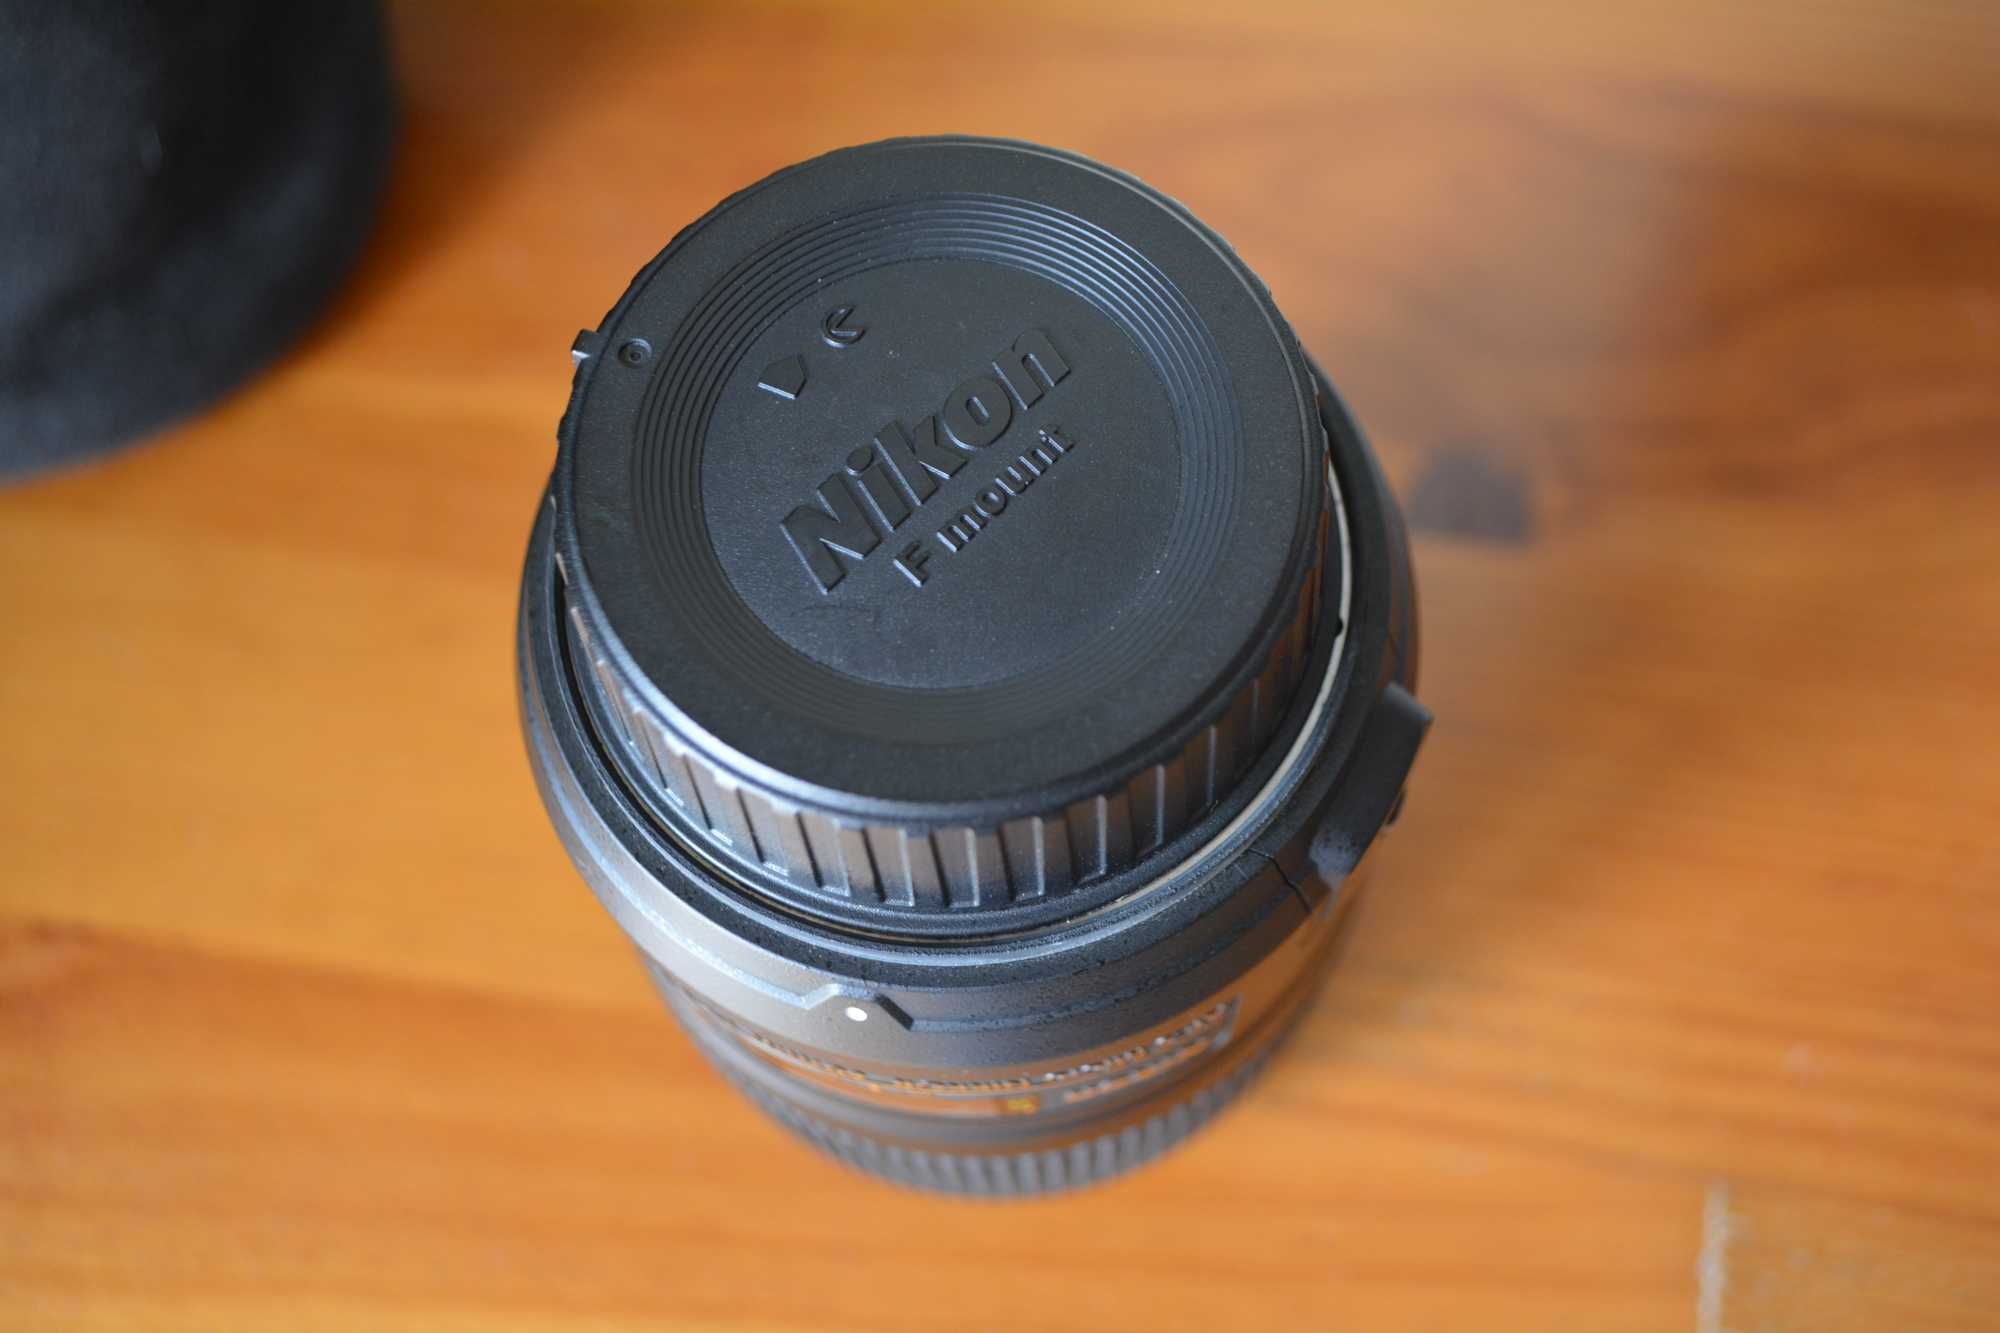 Nikon AF-S Micro Nikkor 60mm f/2.8G IF-ED